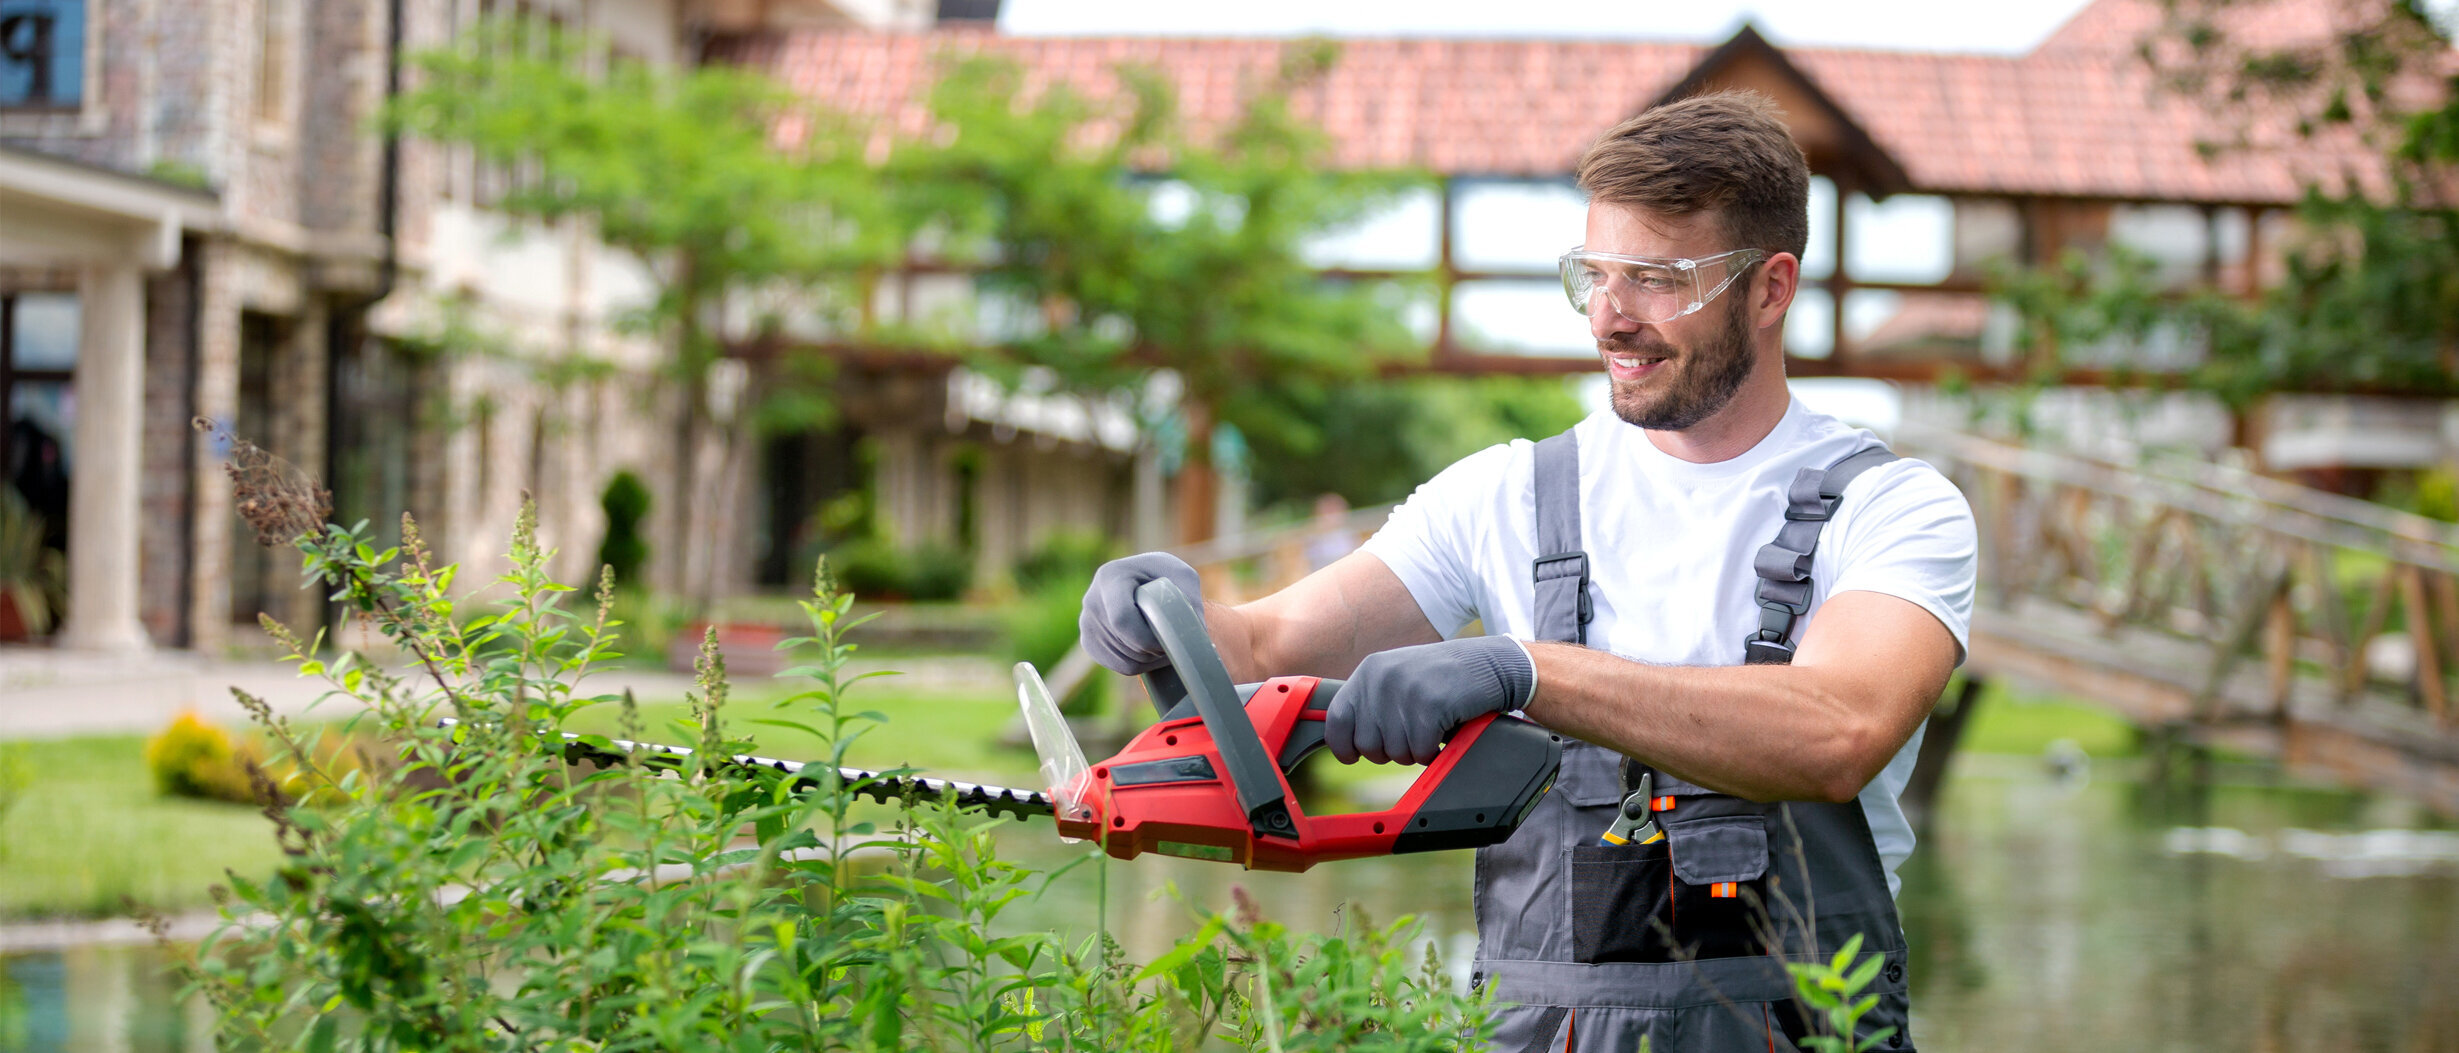 Mann trägt bei der Gartenarbeit eine Schutzausrüstung, um Unfälle zu vermeiden